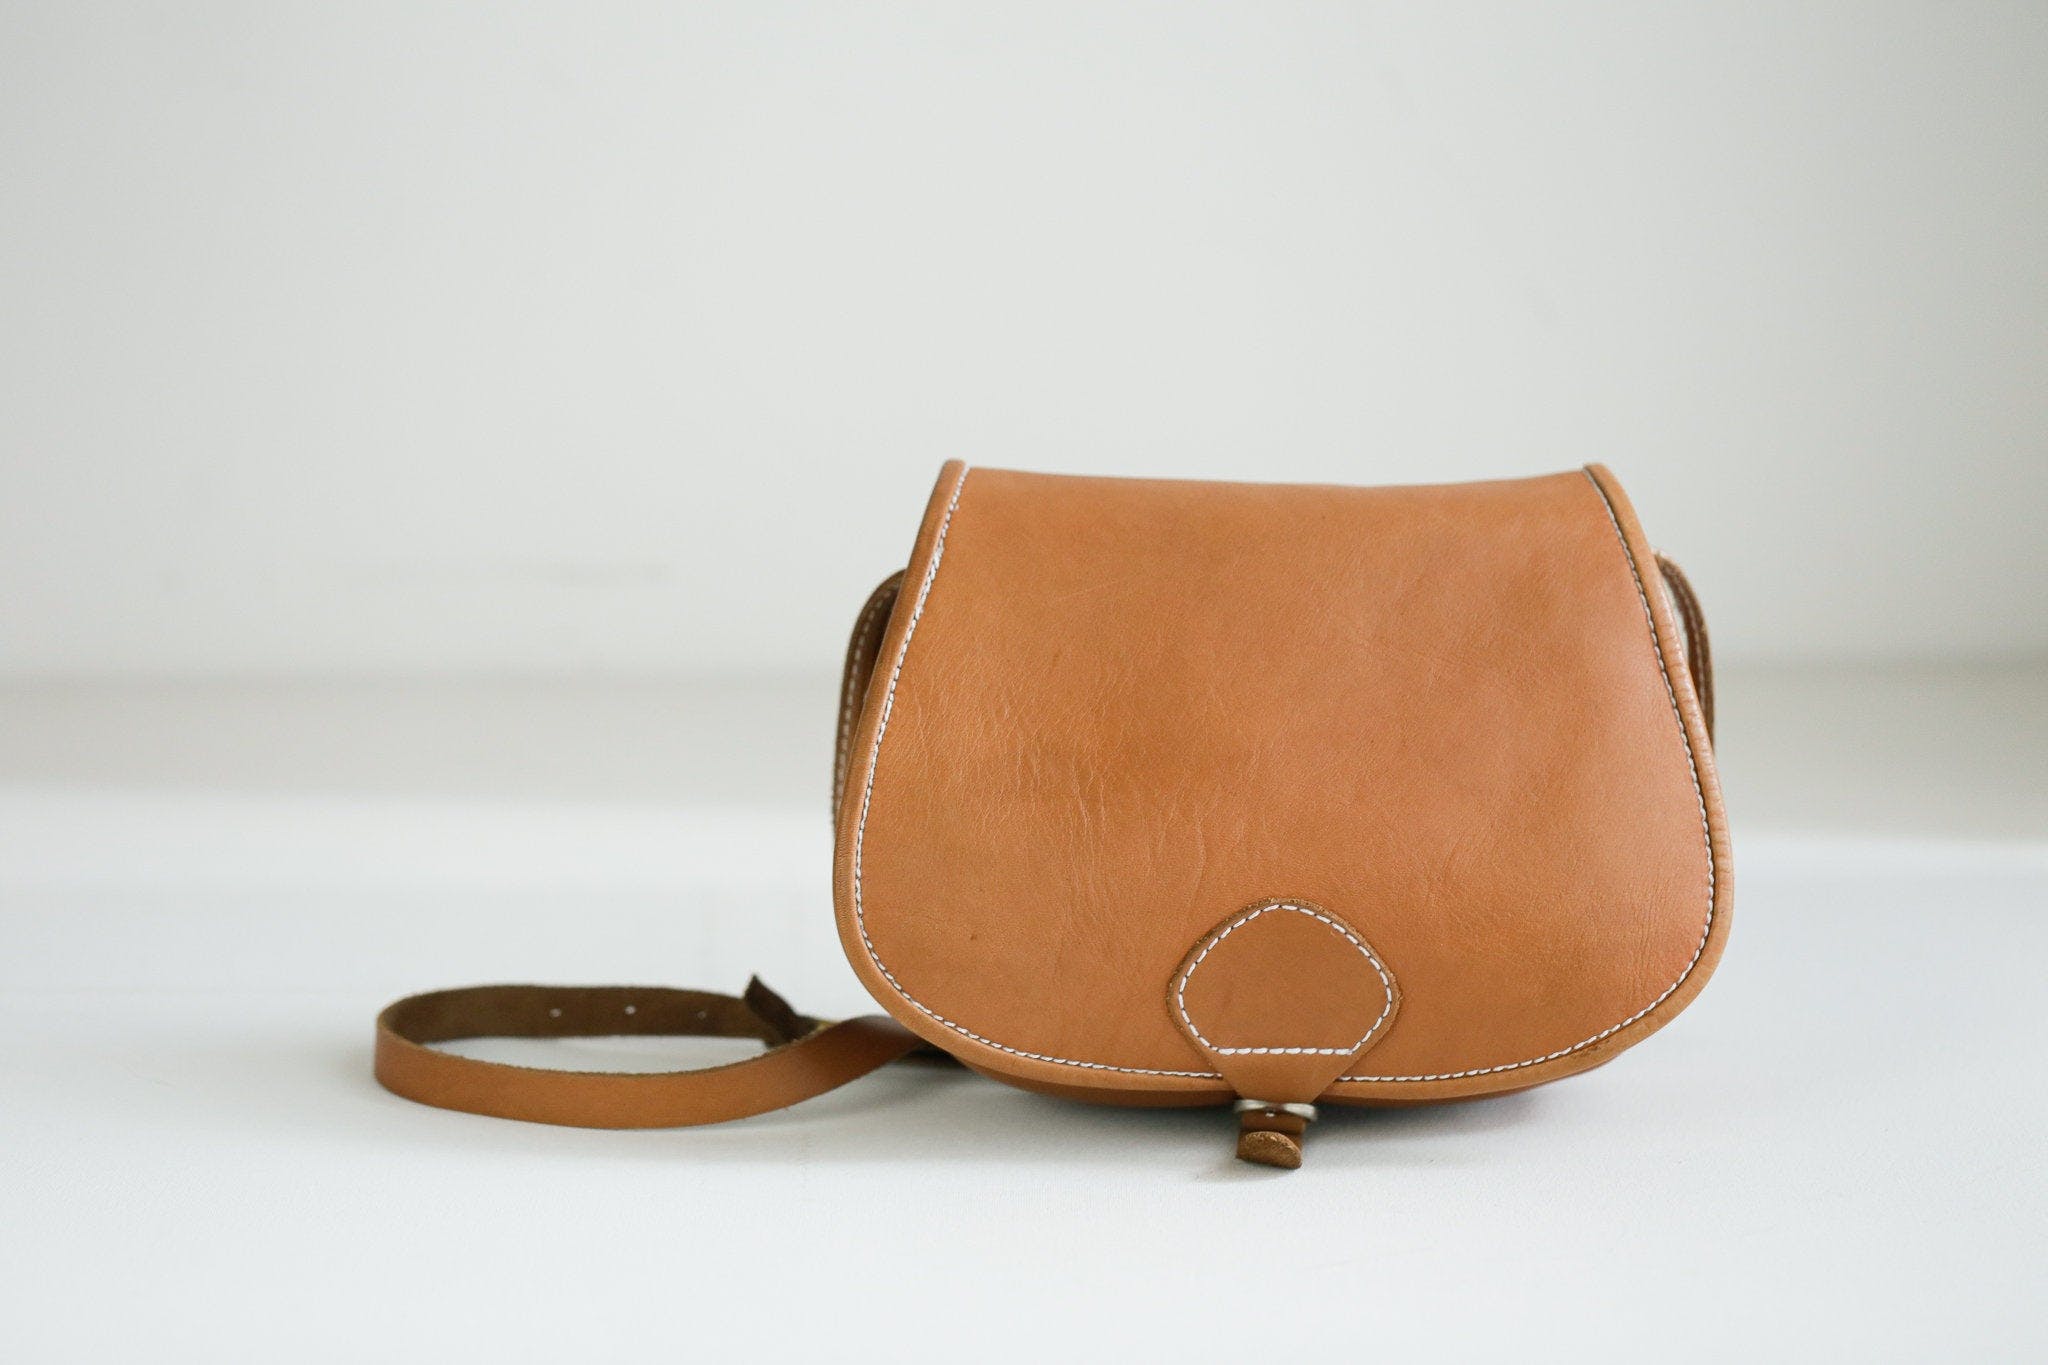 Vintage Leather Oval Crossbody Bag | Shop THRILLING